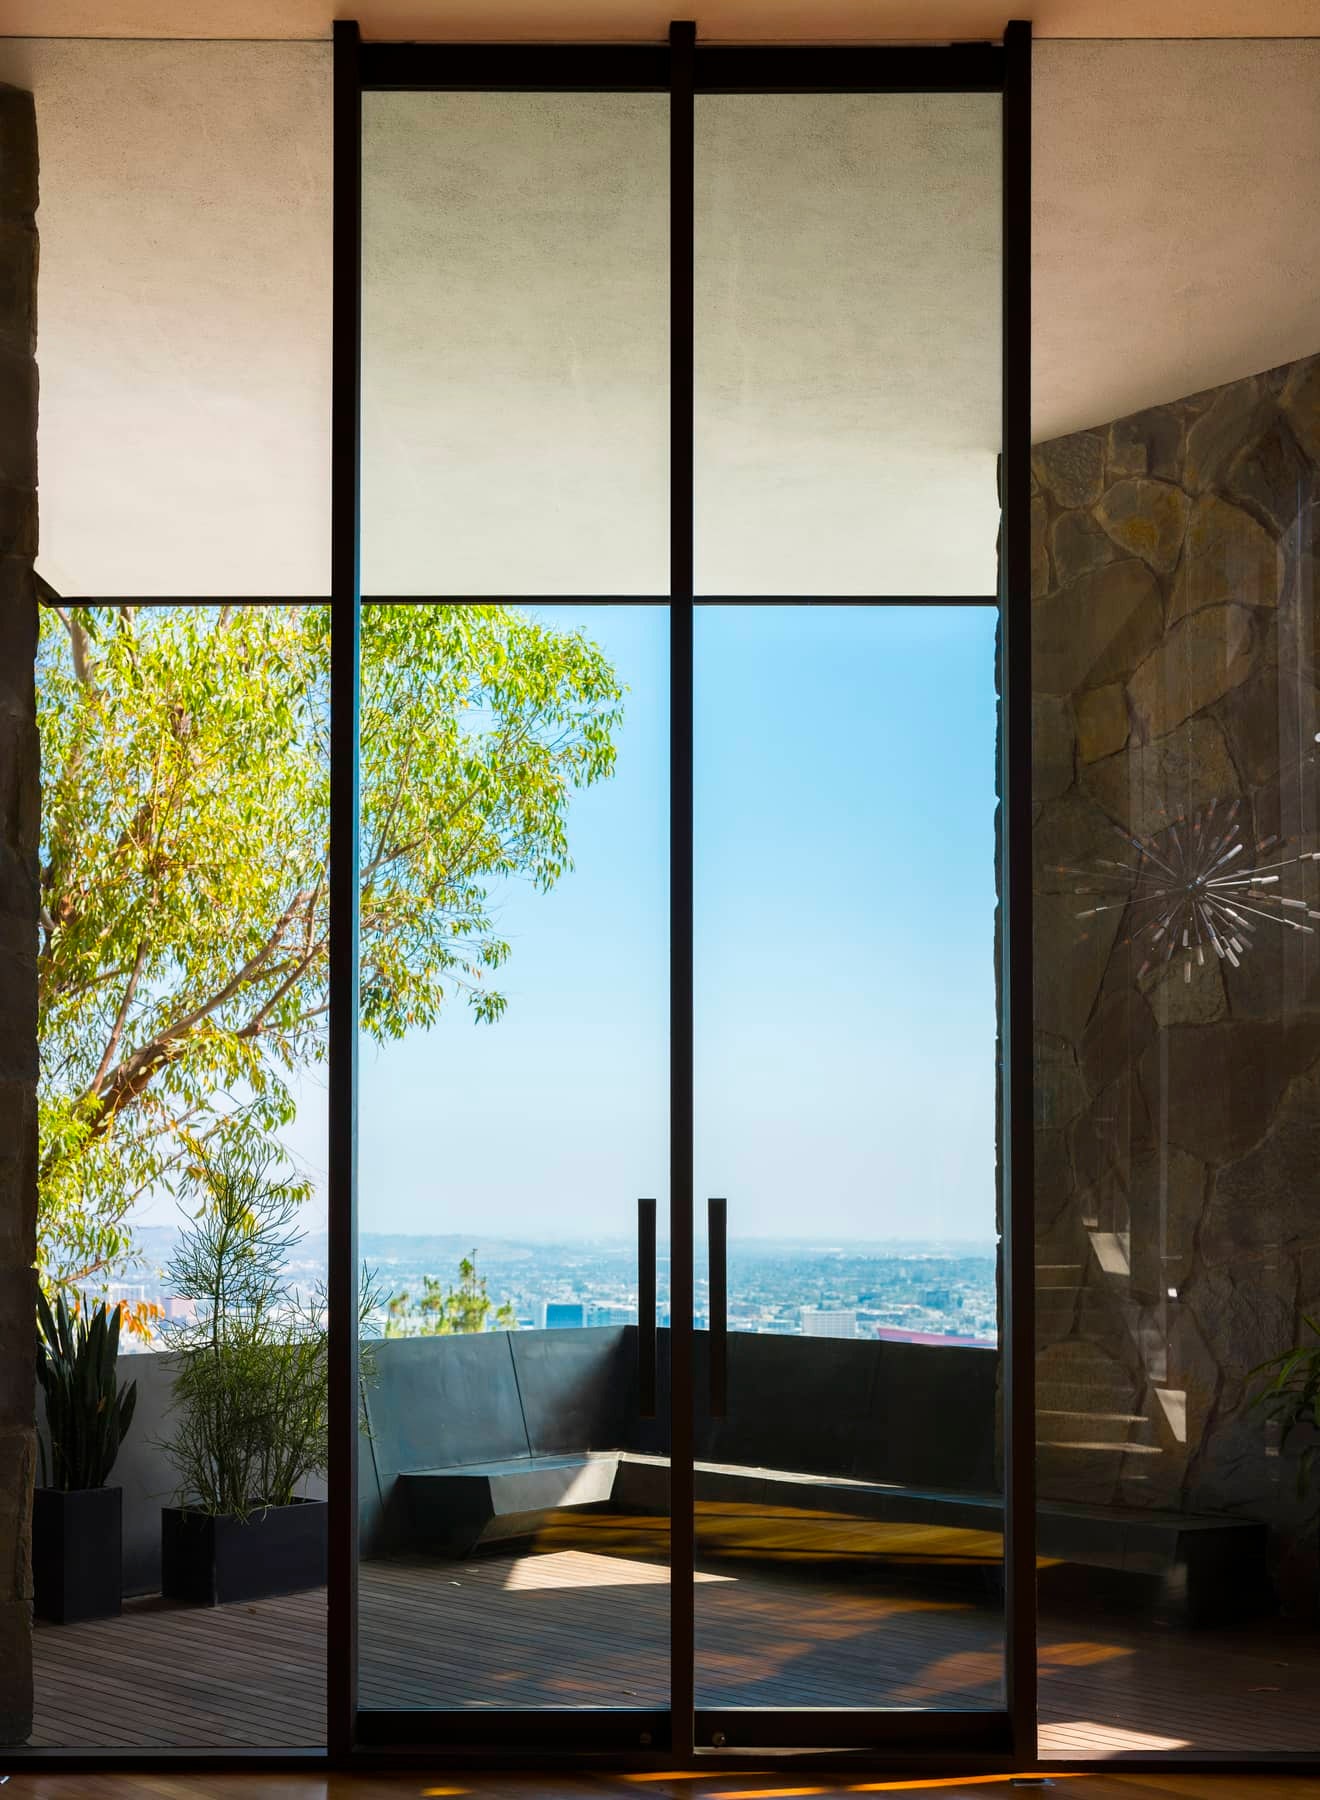 Дом по проекту Джона Лотнера в ЛосАнджелесе выставили на продажу